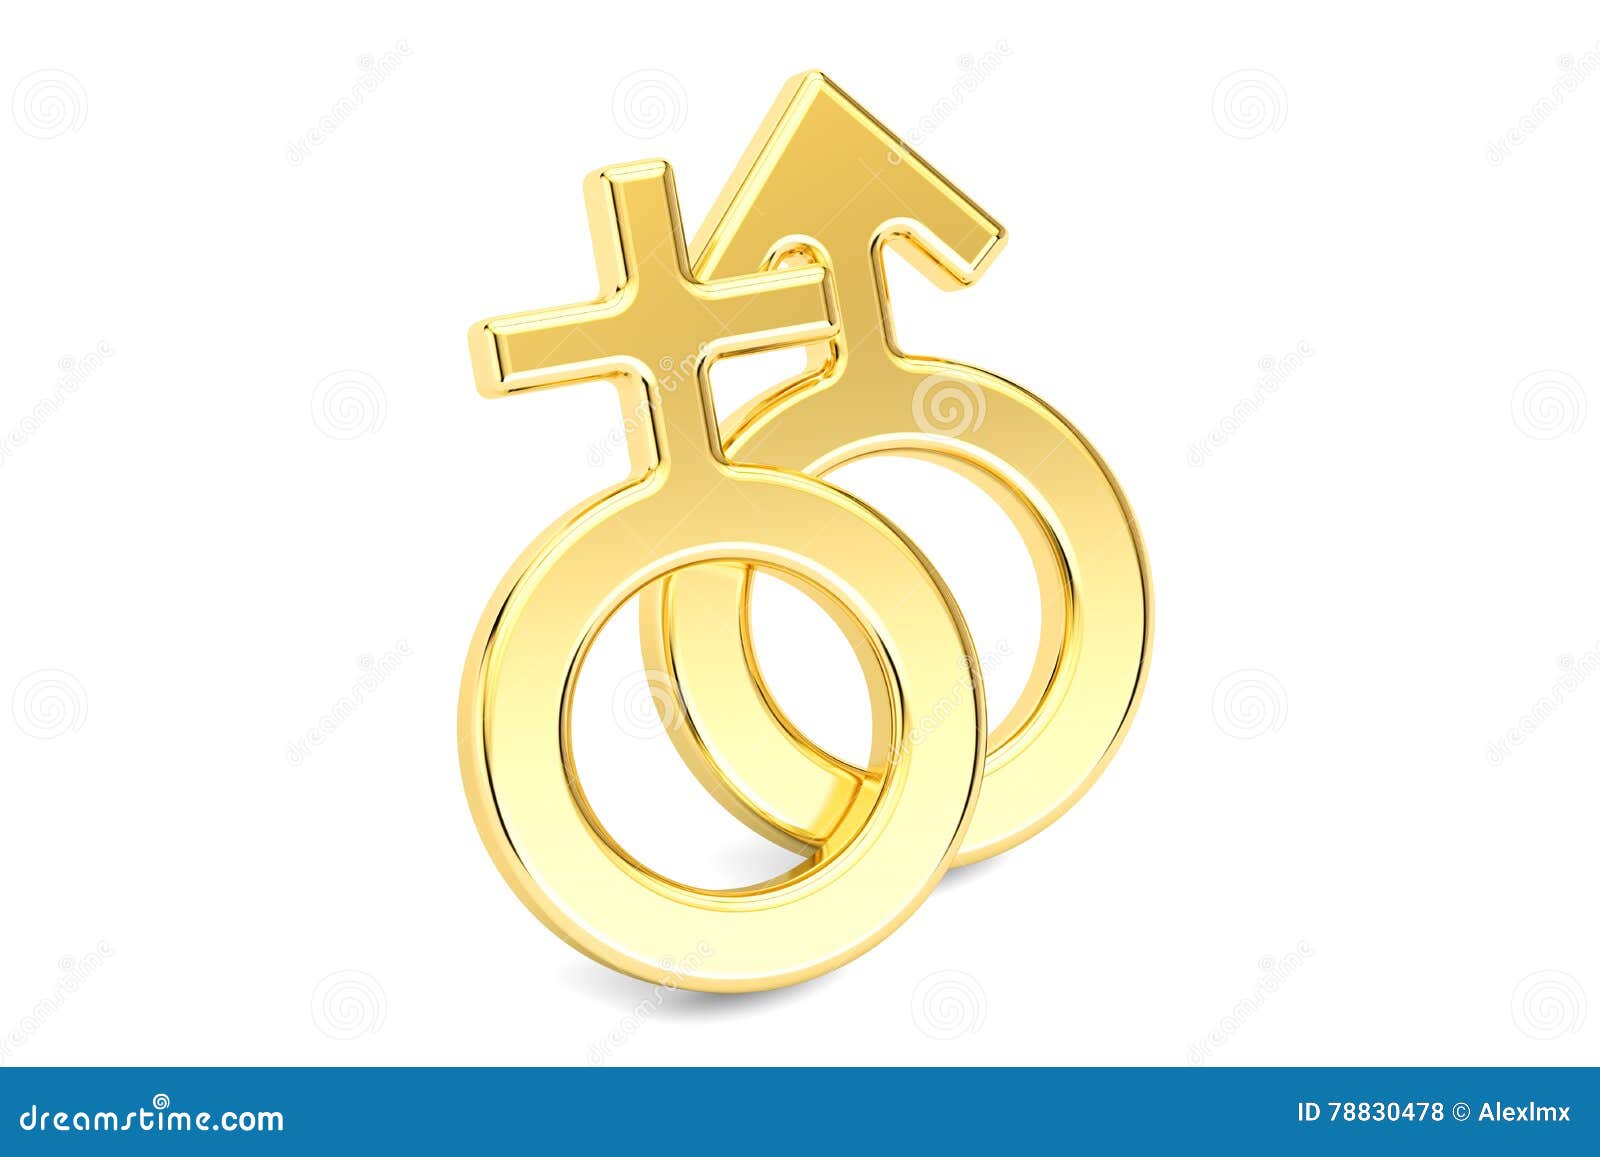 Female And Male Gender Golden Symbols 3d Rendering Stock Illustration Illustration Of